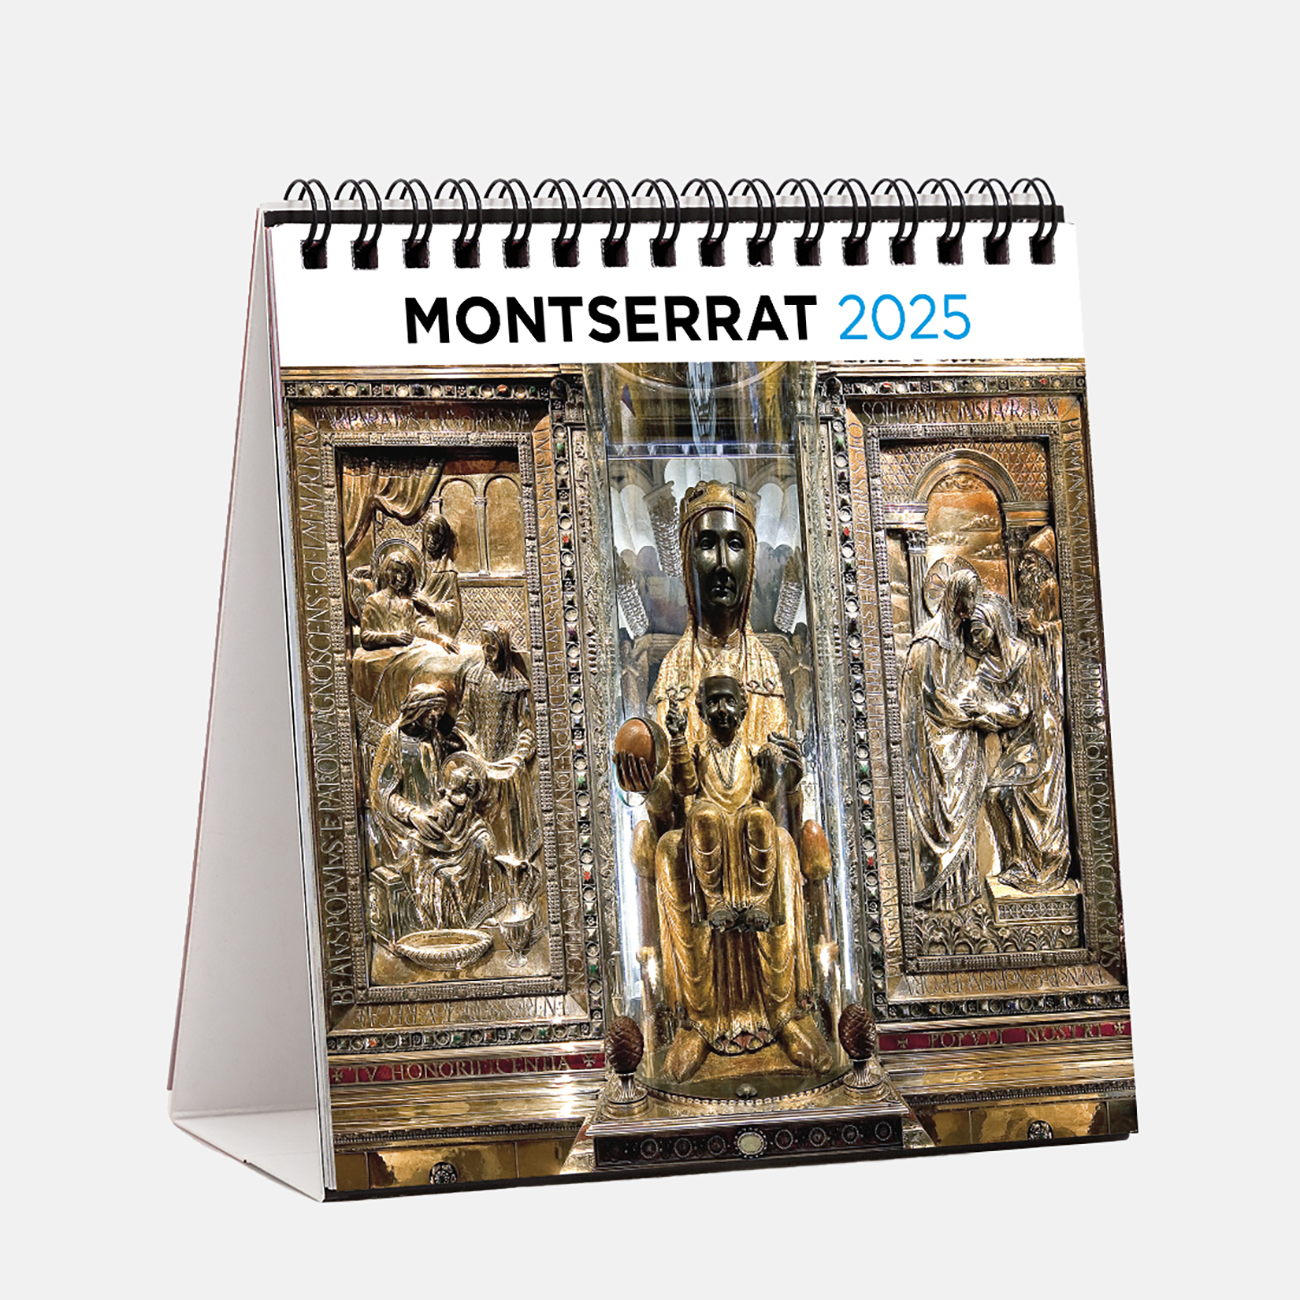 Calendari 2025 Montserrat s25m calendario sobremesa 2025 montserrat